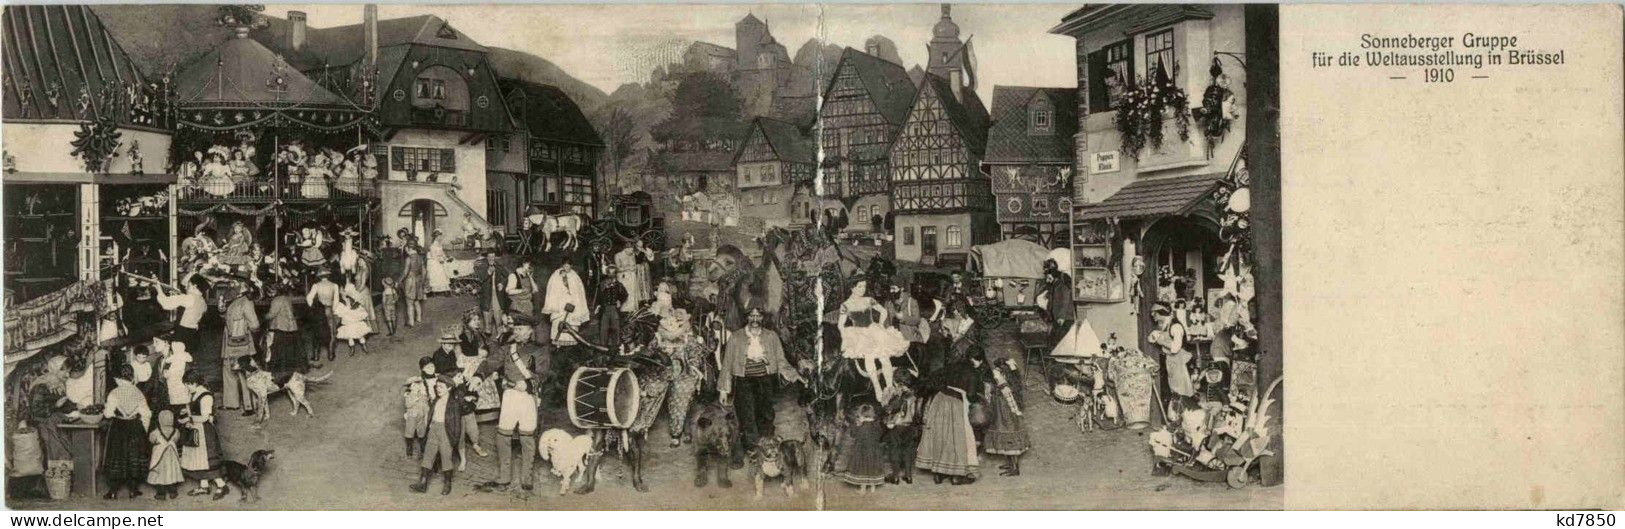 Bruxelles - Sonneberger Gruppe Für Die Weltausstellung 1910 - Klappkarte - Mostre Universali